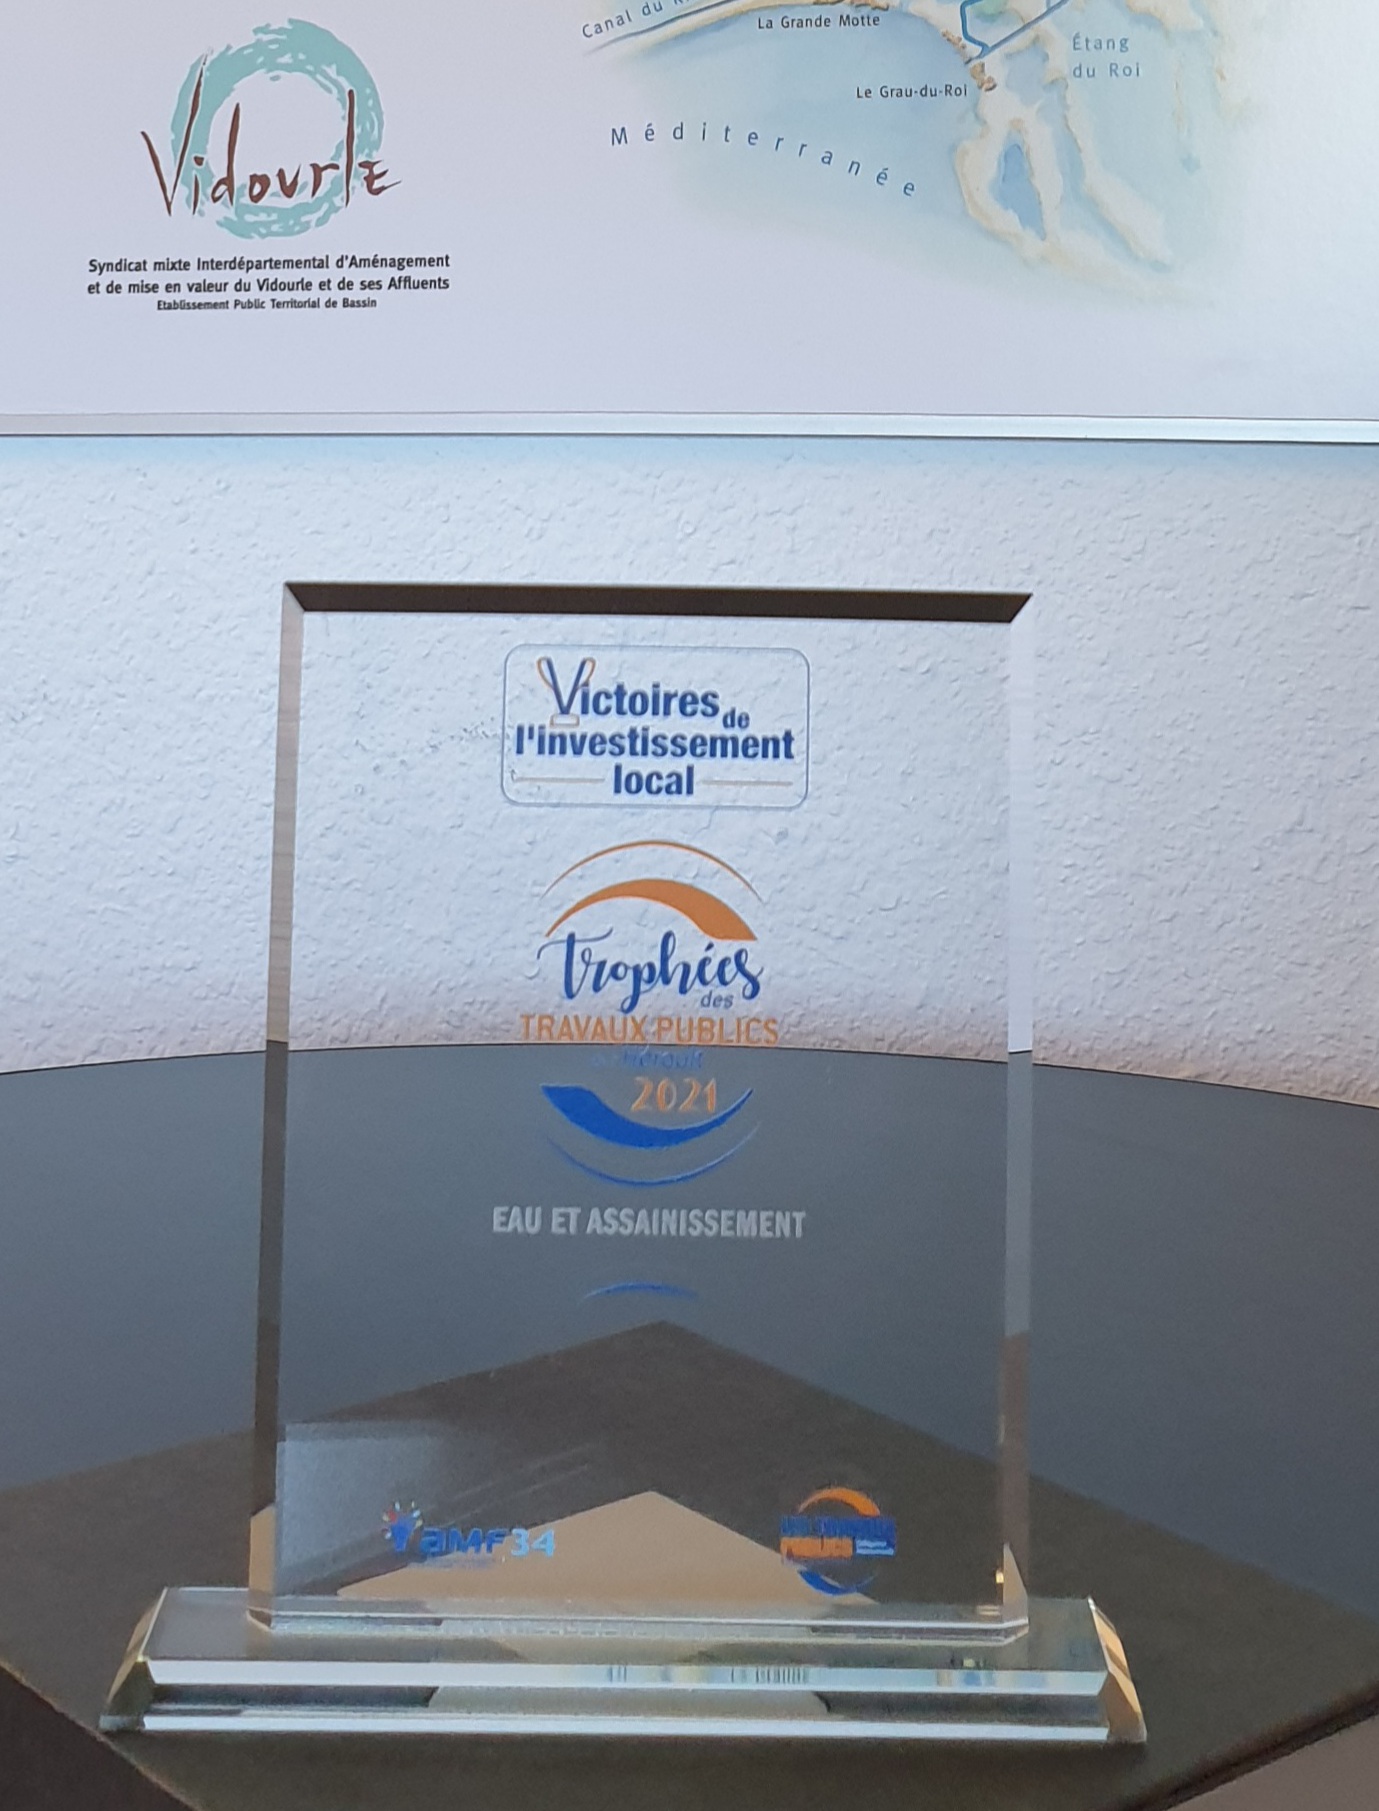 L’EPTB Vidourle, lauréat du prix “Victoires de l’Investissement Local de l’Hérault” dans la catégorie “Réalisations Eau et Assainissement”.